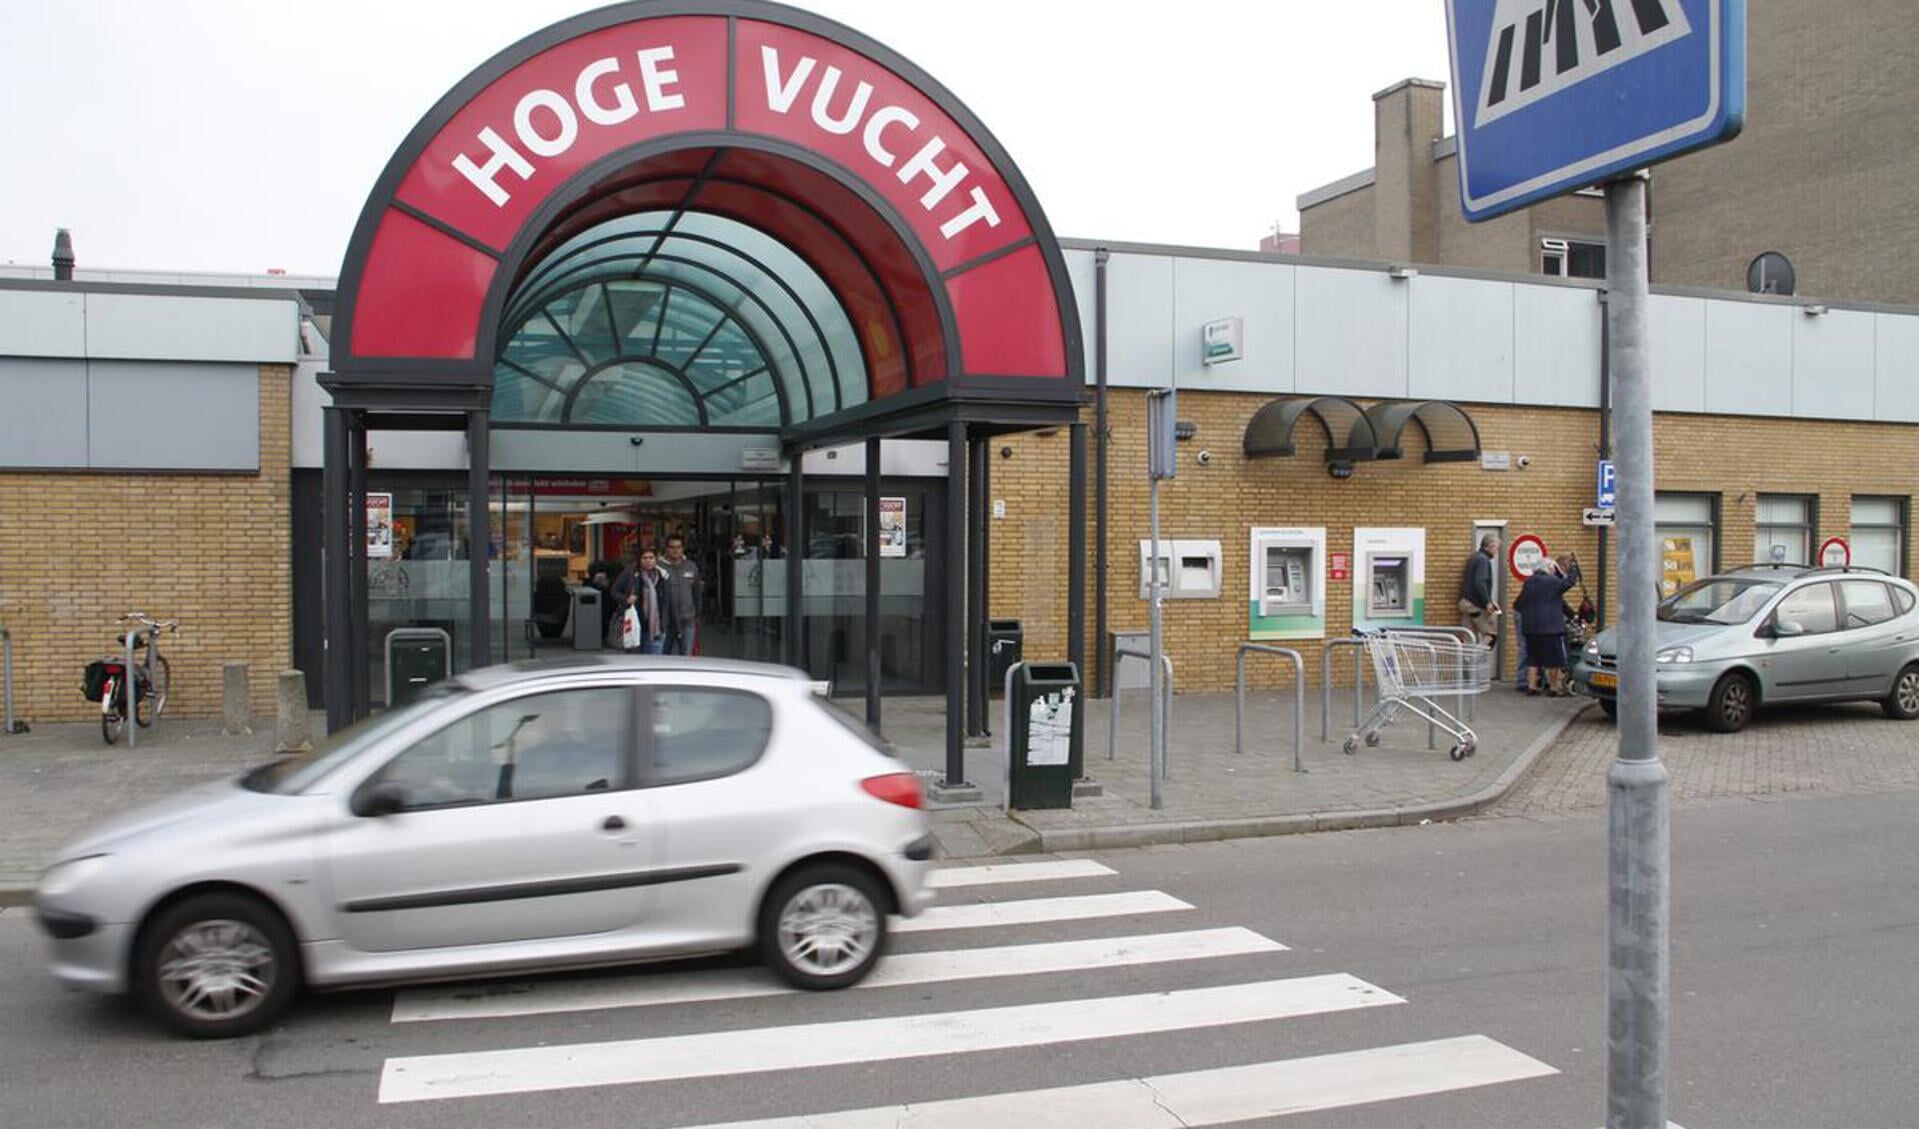 Winkelcentrum Hoge Vucht.